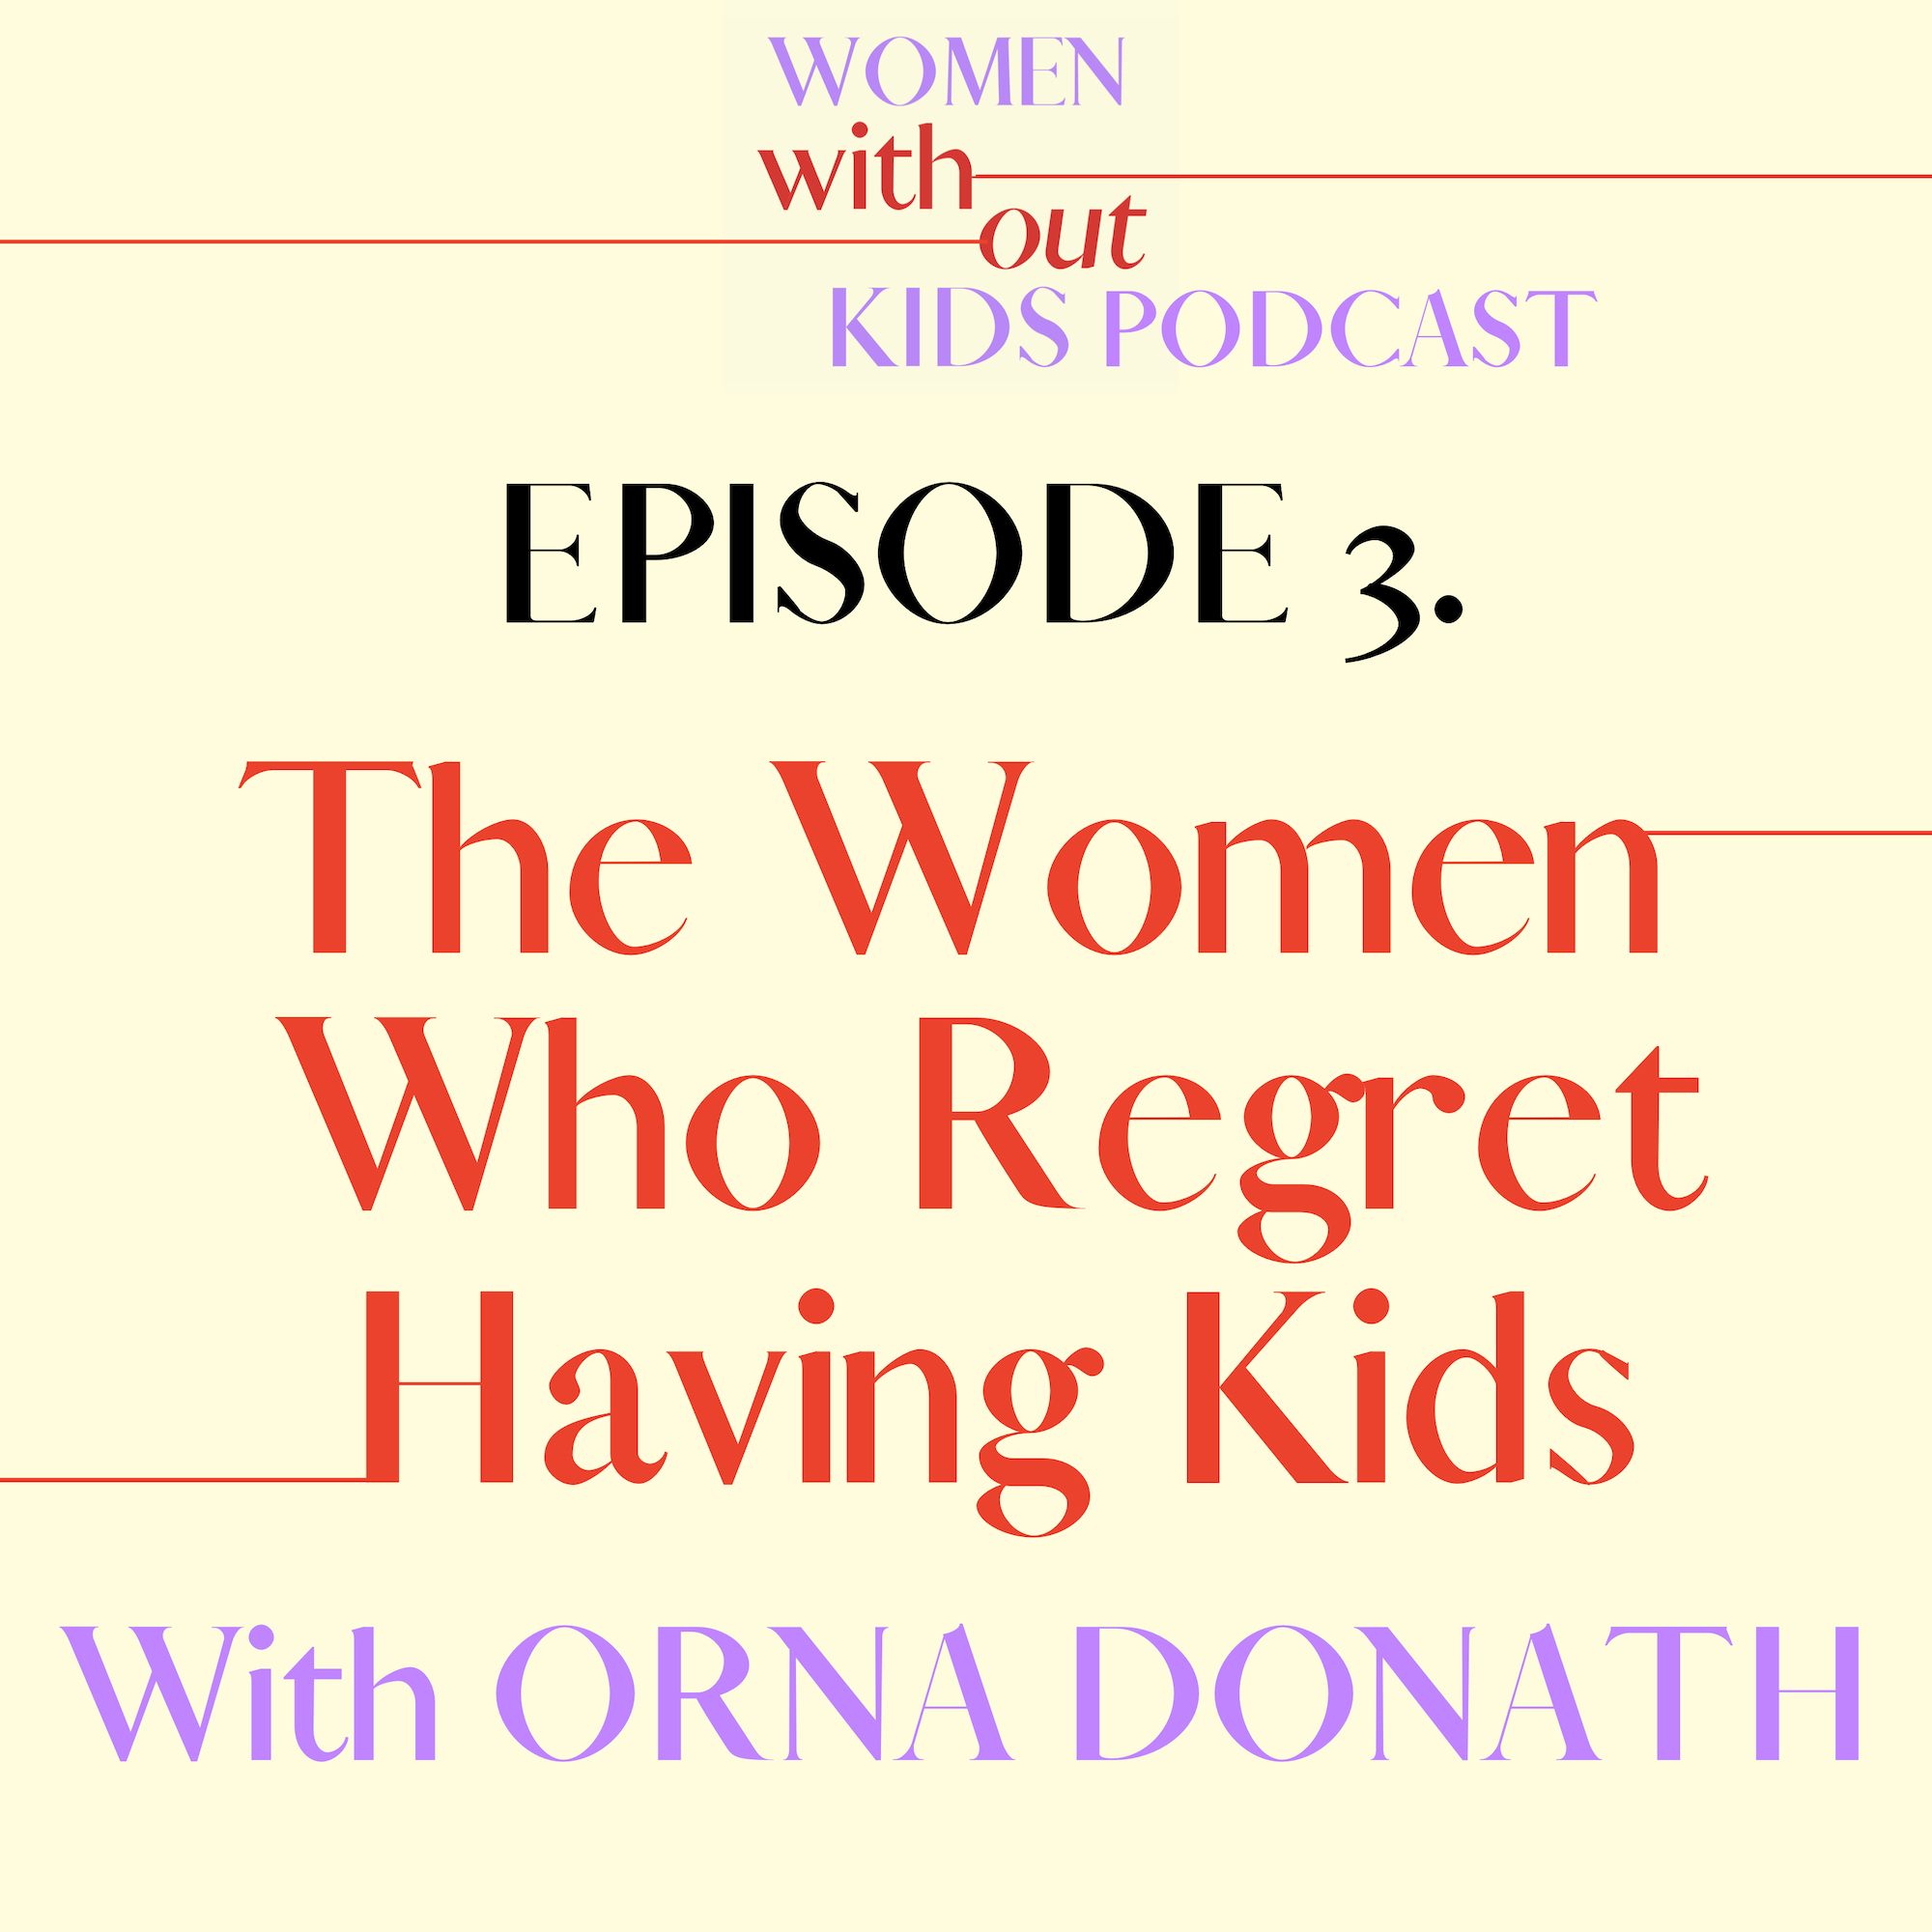 Orna Donath women without kids podcast regretting motherhood